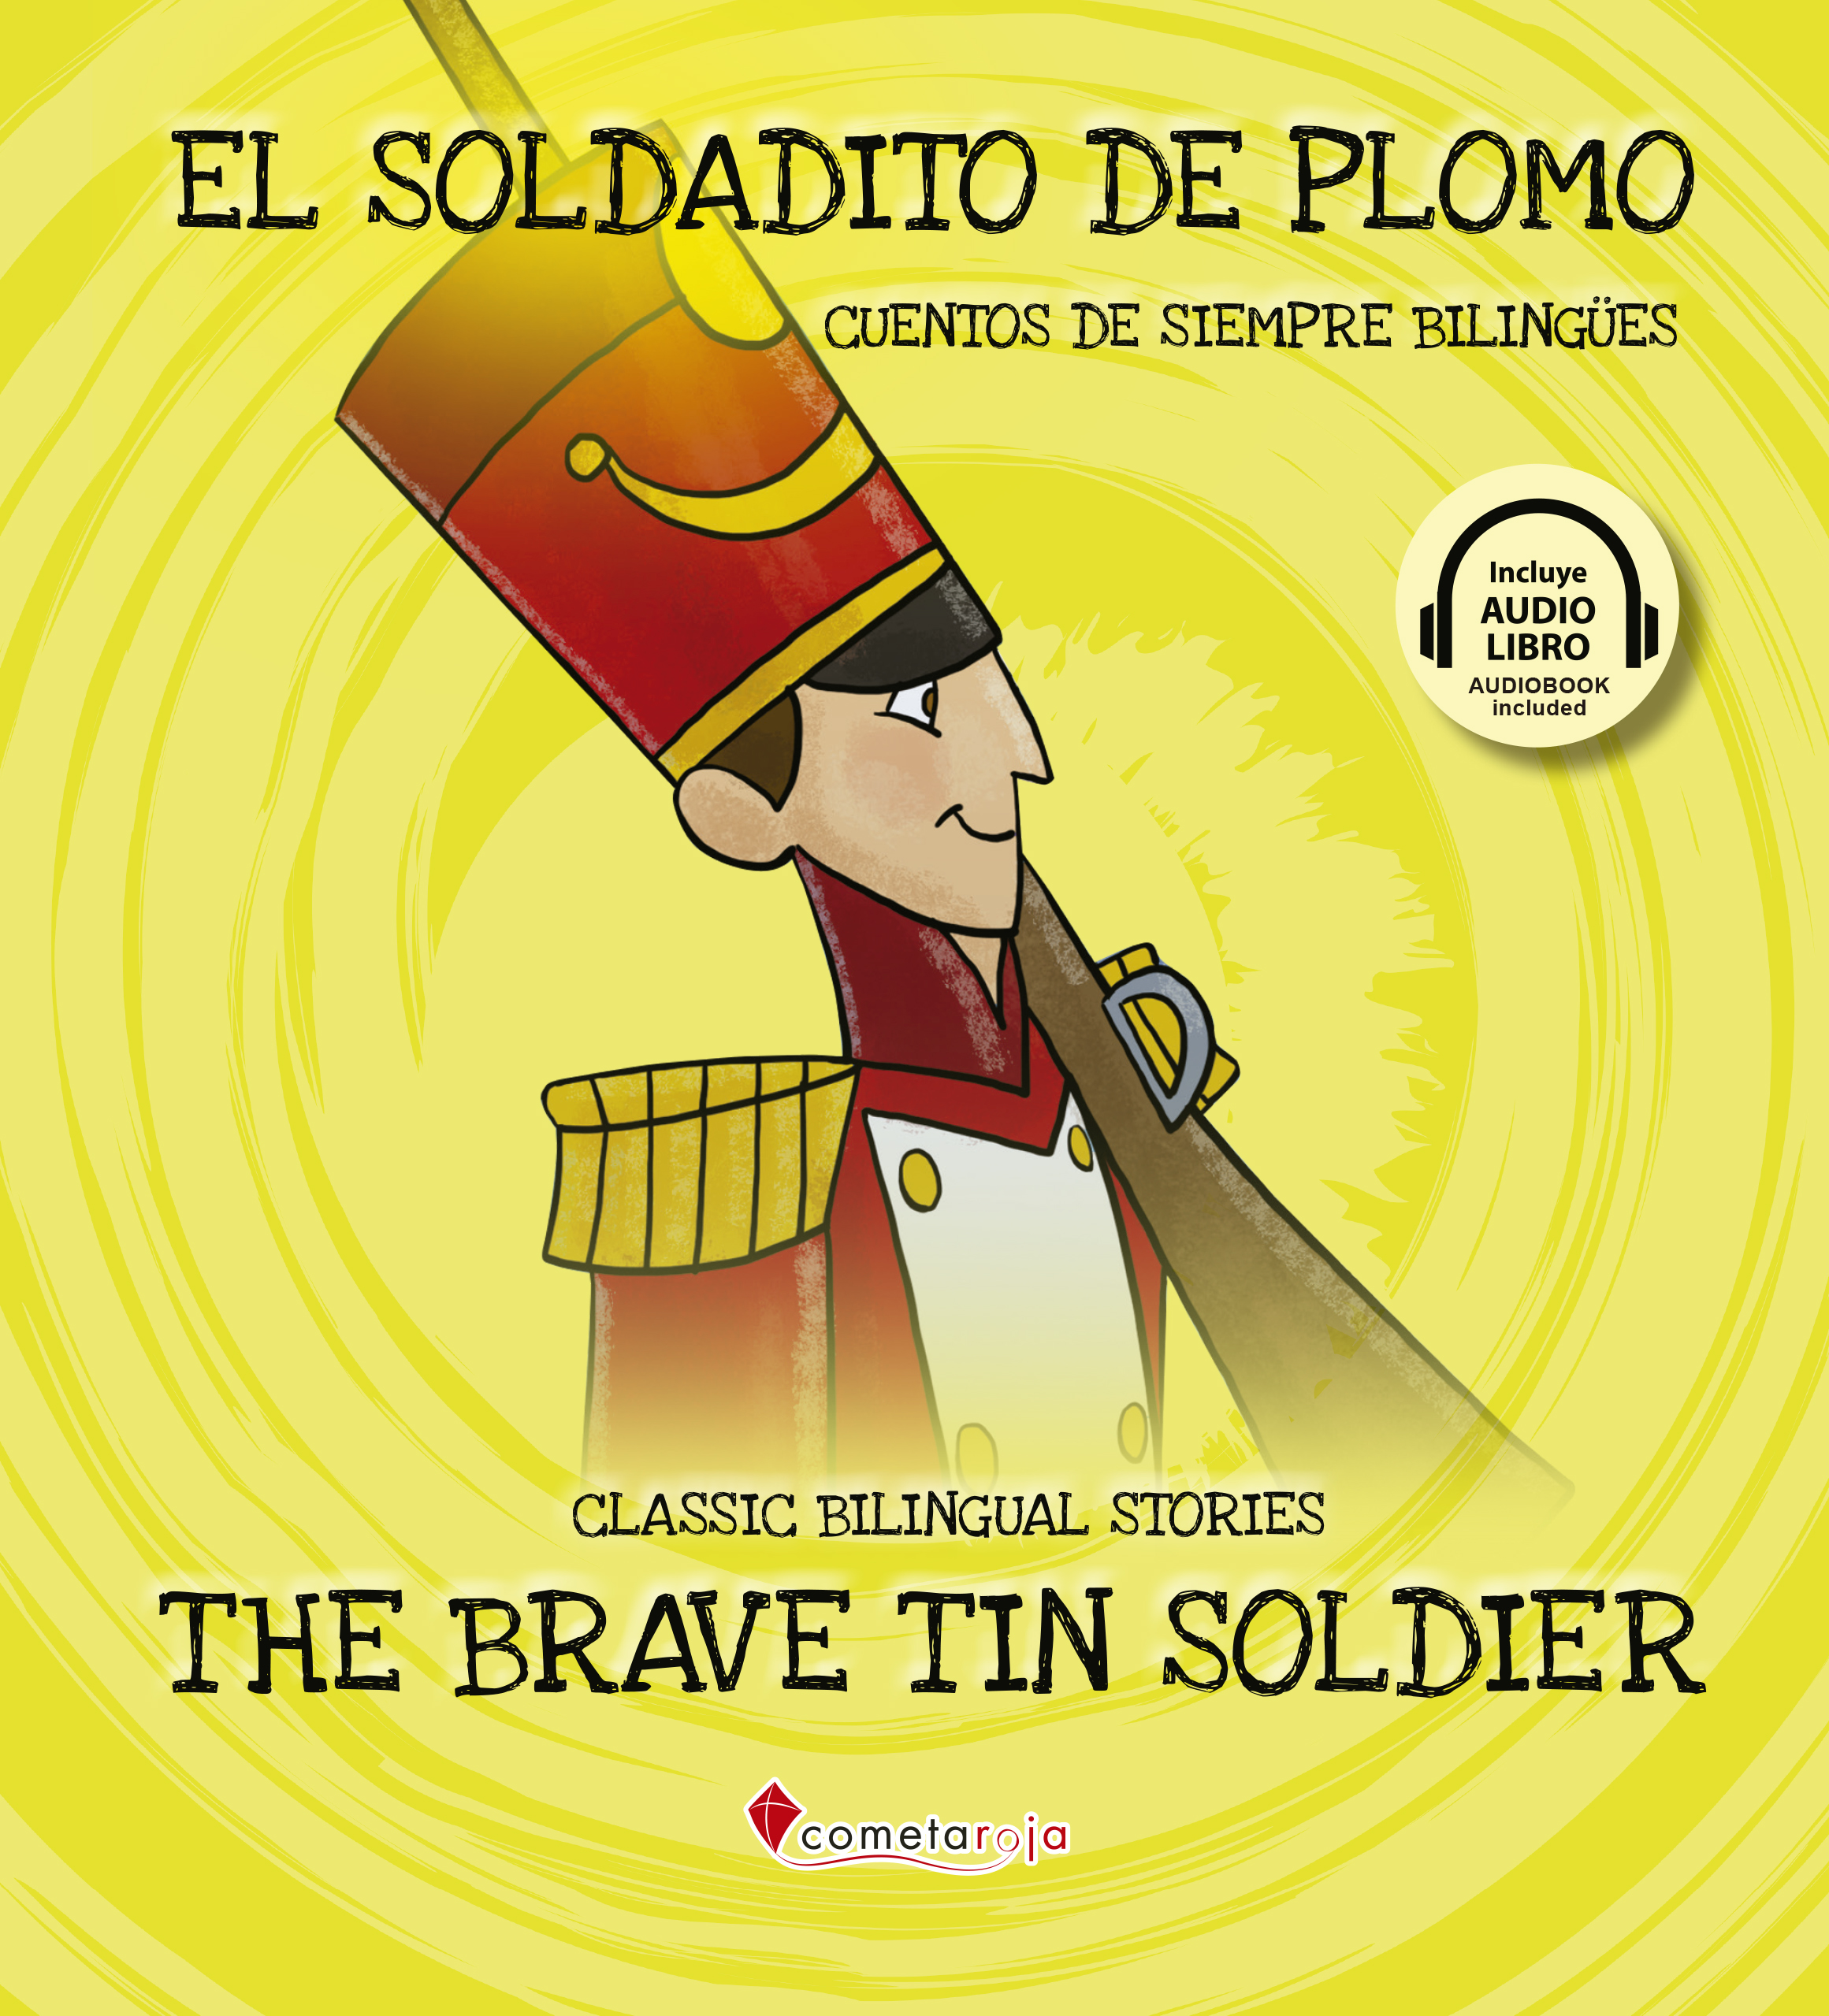 El soldadito de plomo / The brave tin soldier